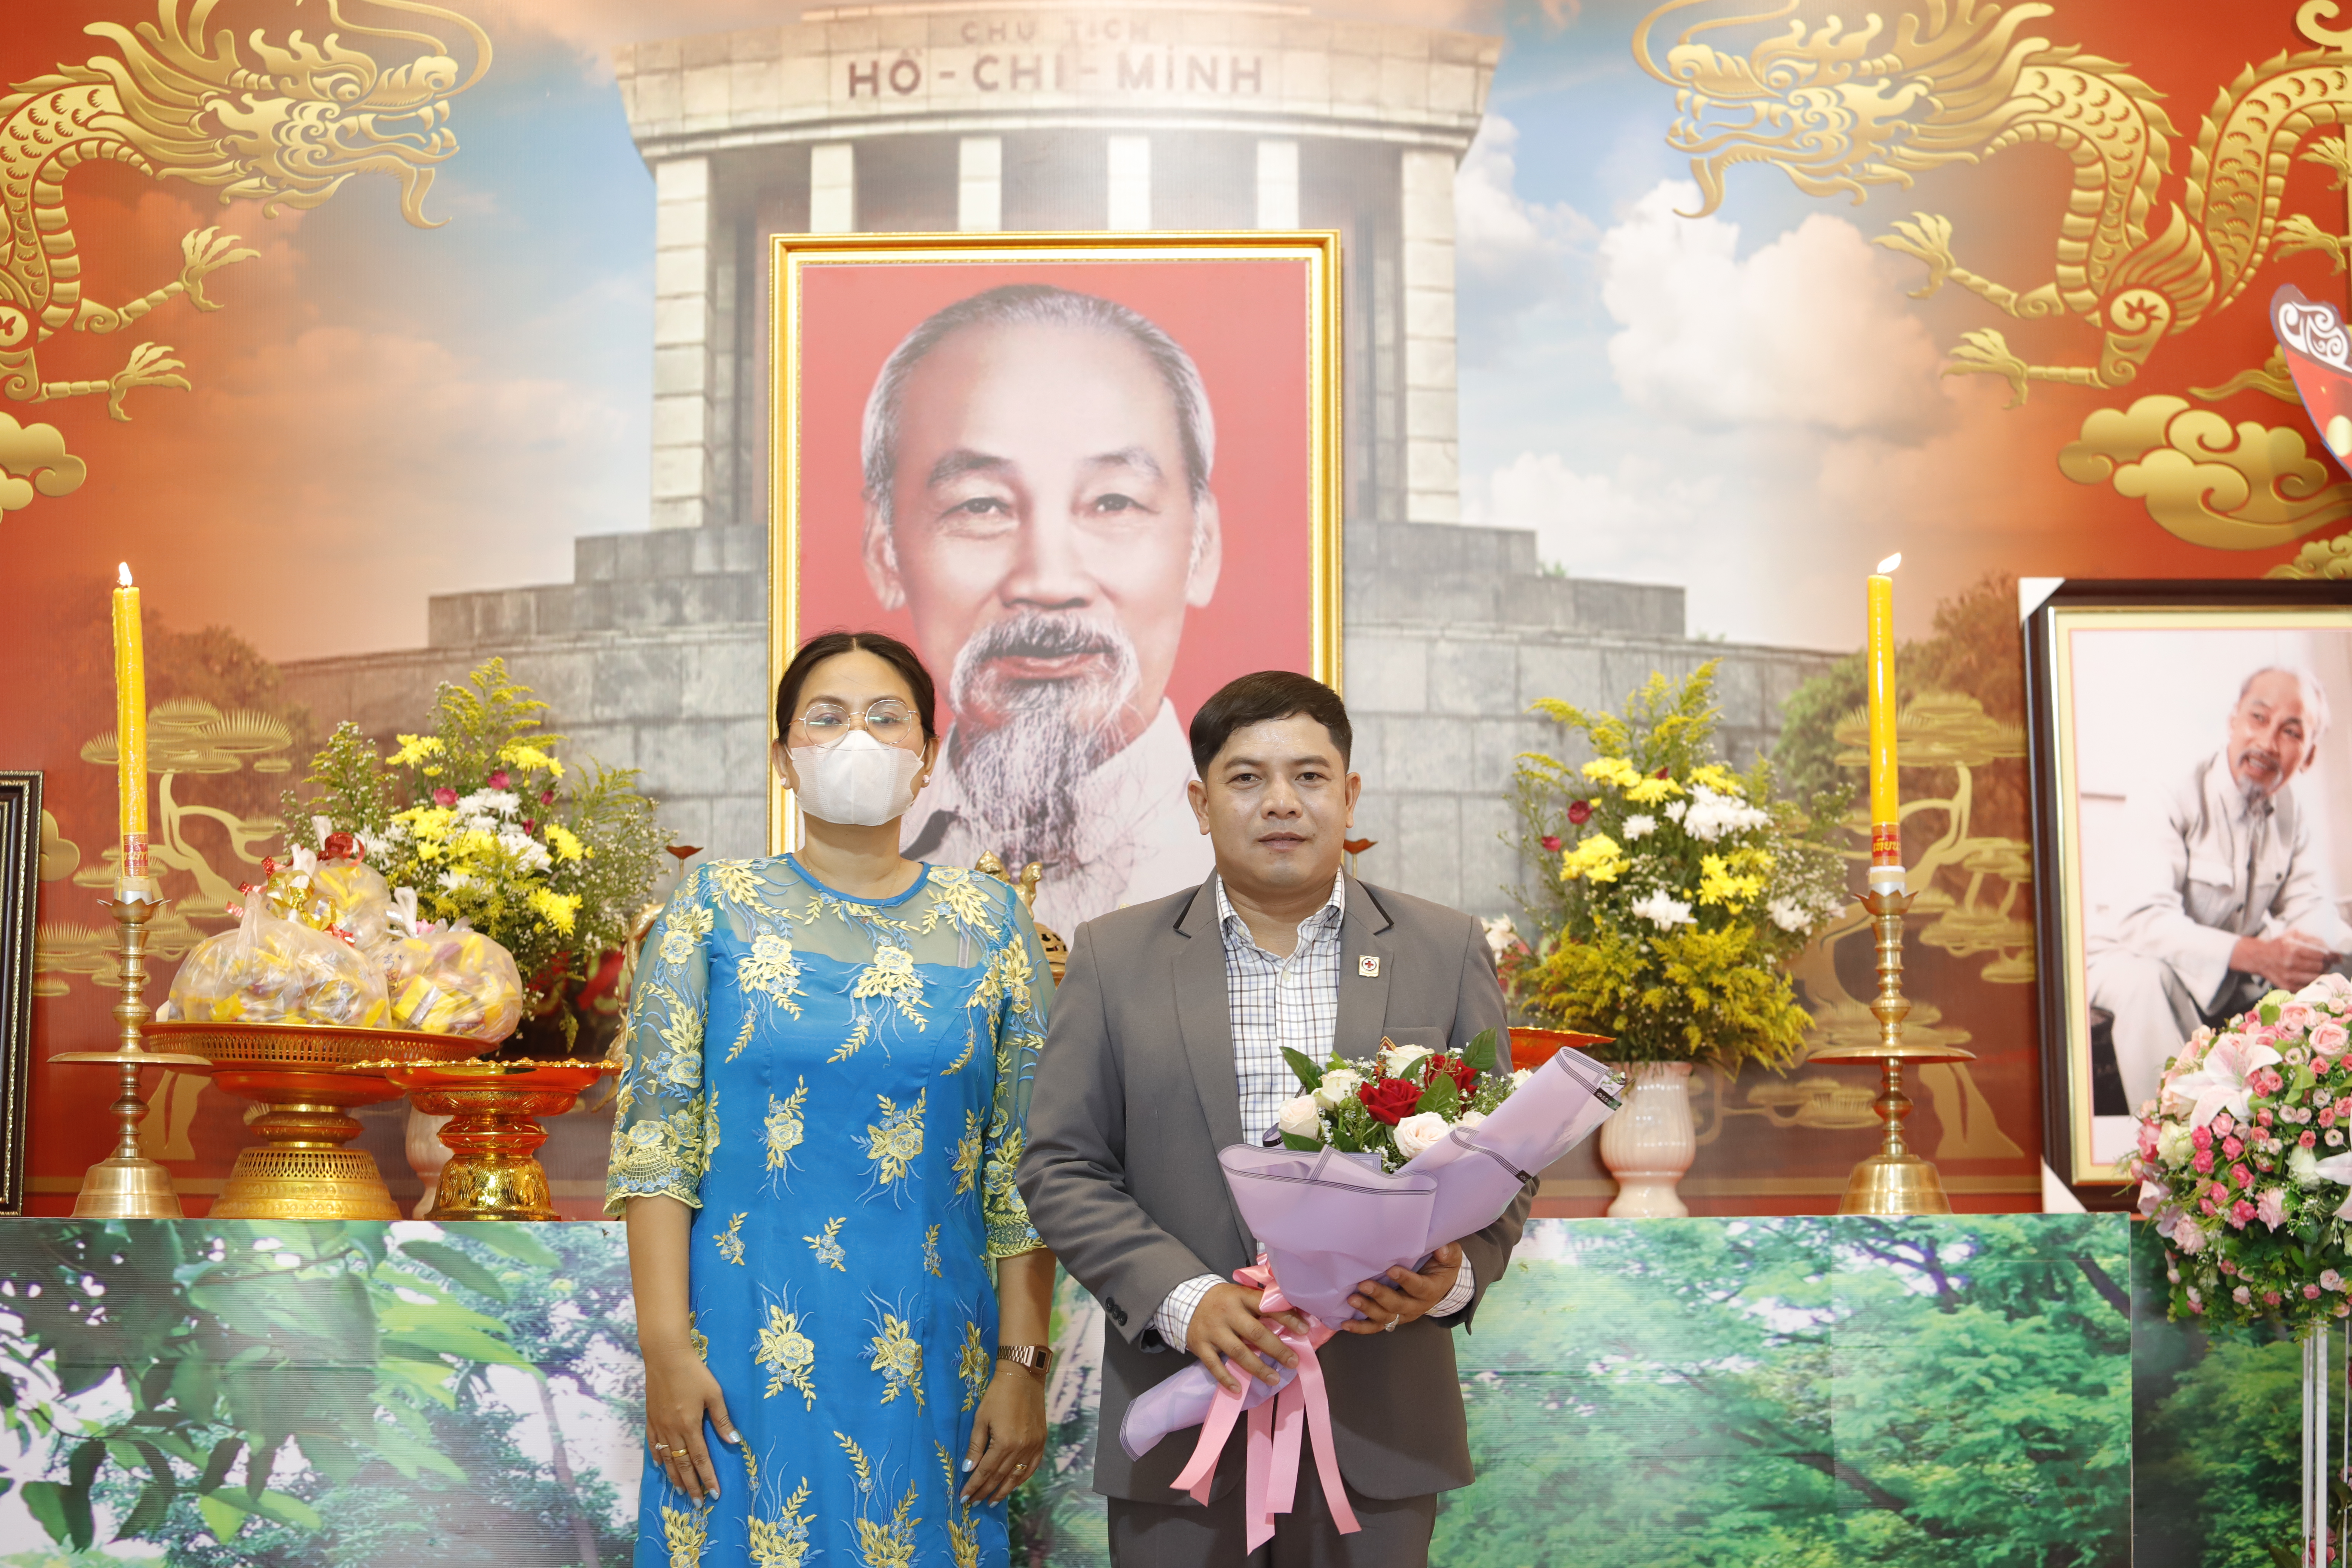 ม.นครพนมร่วมเป็นเกียรติในงานรำลึก 133 ปี วันคล้ายวันเกิดท่านประธานโฮจิมินห์และความสัมพันธ์มิตรภาพไทย - เวียดนาม ประจำปี 2566ม.